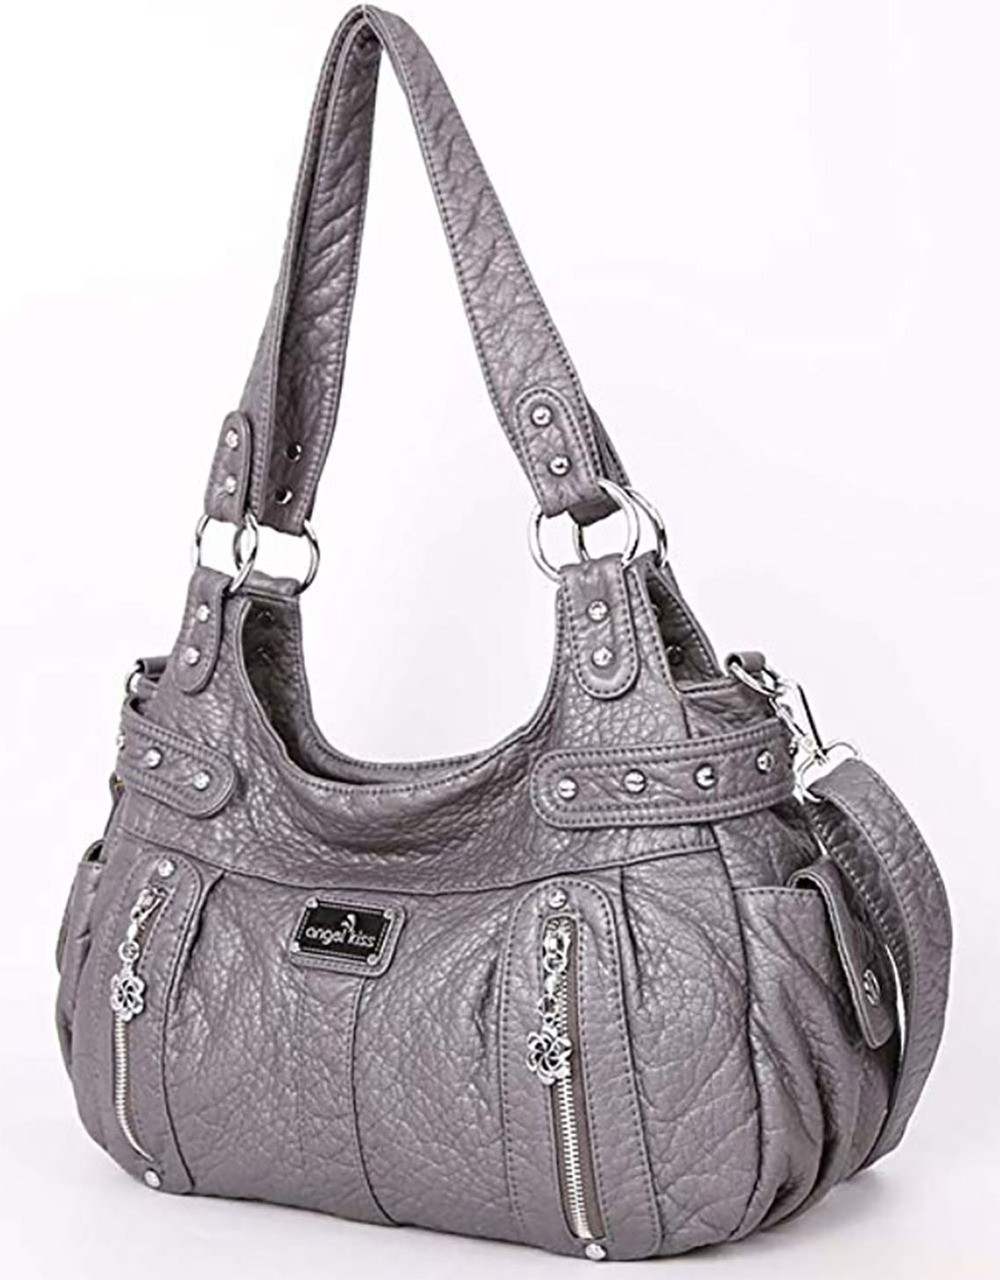 Fauré Le Page Hands On 17 Bag - Grey Shoulder Bags, Handbags - FLP20292